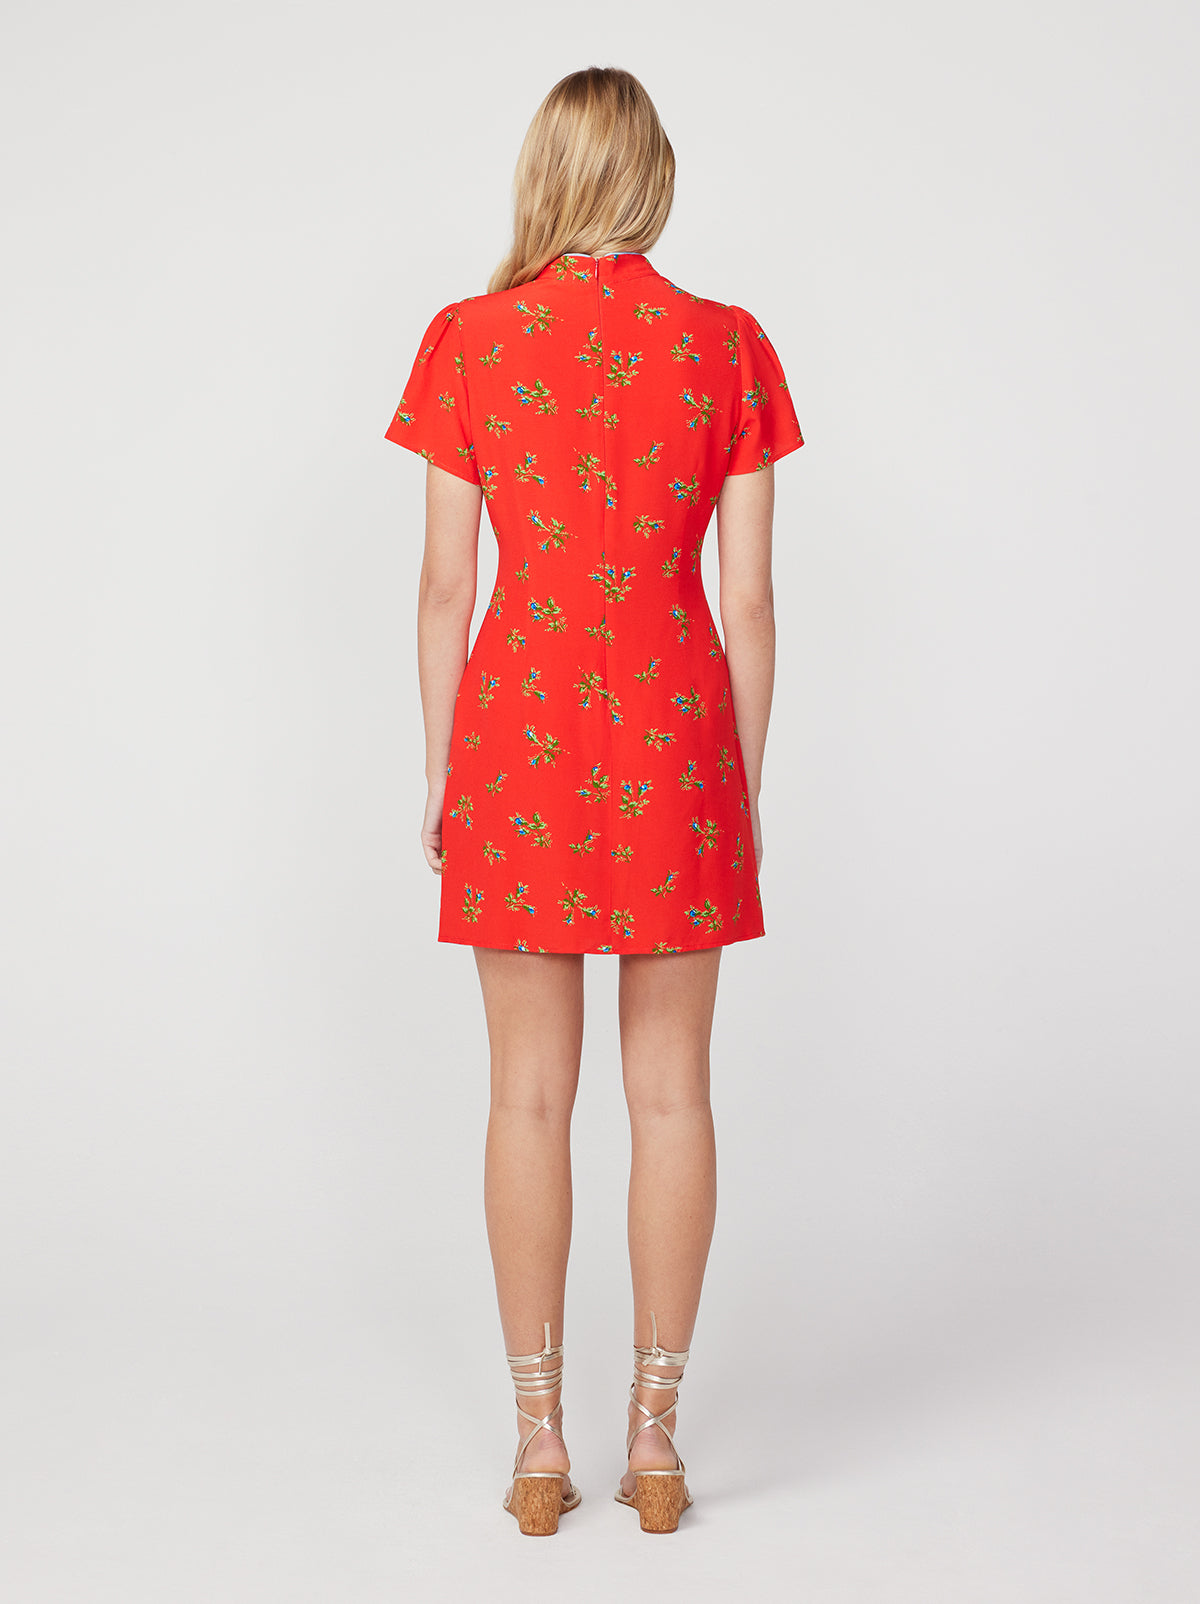 Harlow Red Rosebud Mini Dress By KITRI Studio